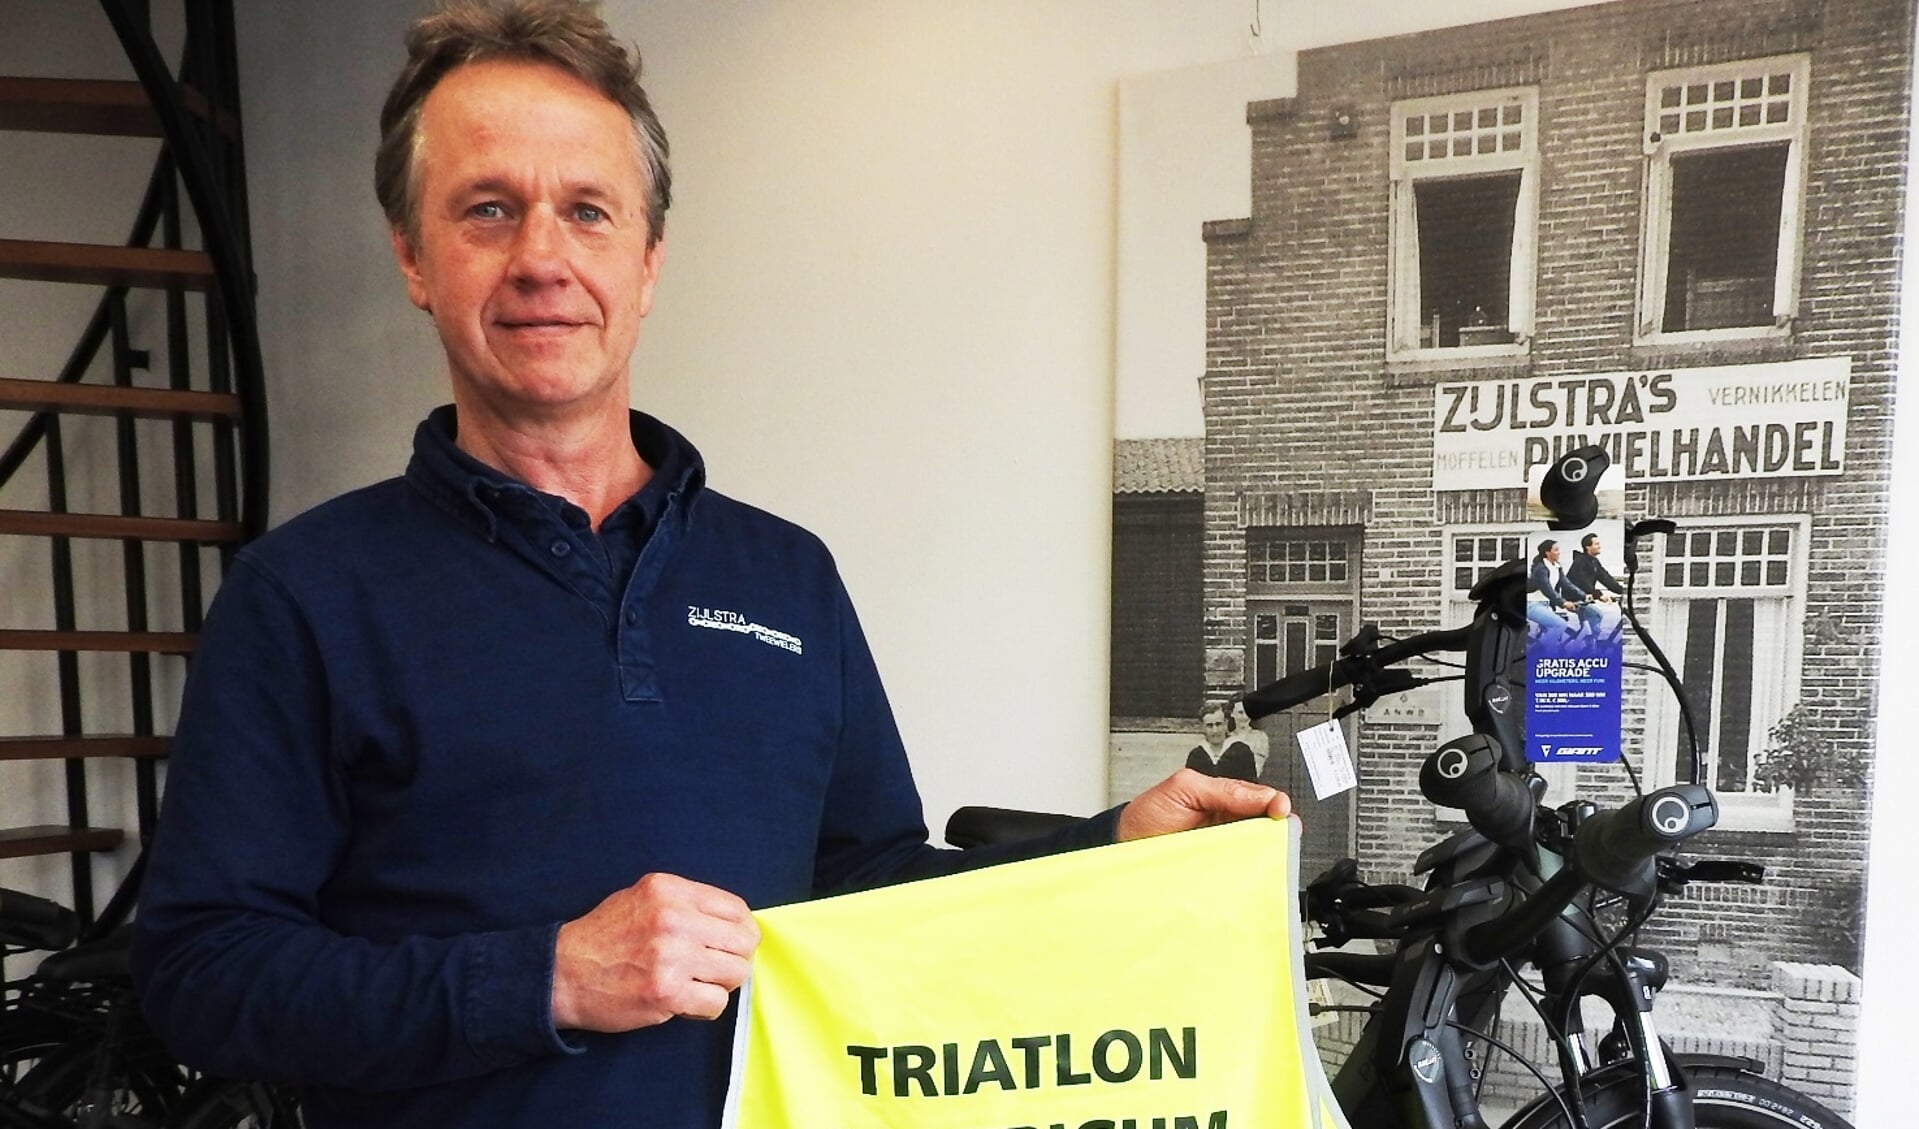 Hans Zijlstra als grote fan van 'Full of Life Triatlon Castricum'.